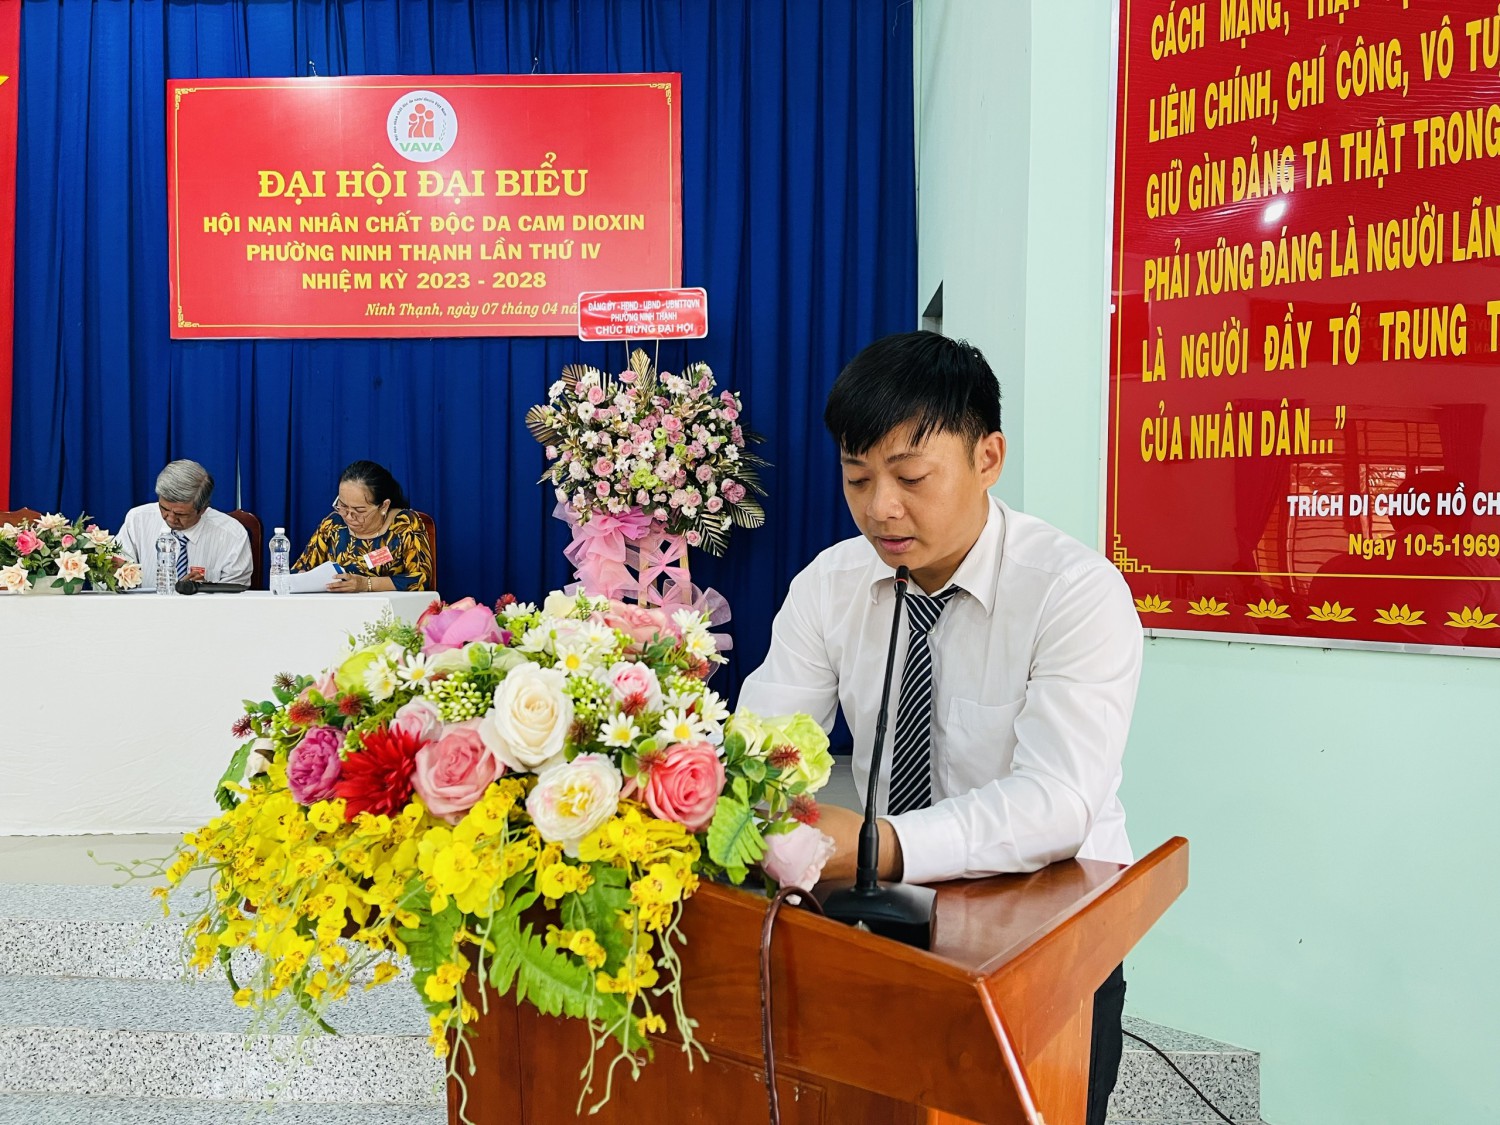 Đại hội Đại biểu Hội Nạn nhân chất độc Da cam/Dioxin phường Ninh Thạnh lần thứ IV nhiệm kỳ 2023 - 2028.